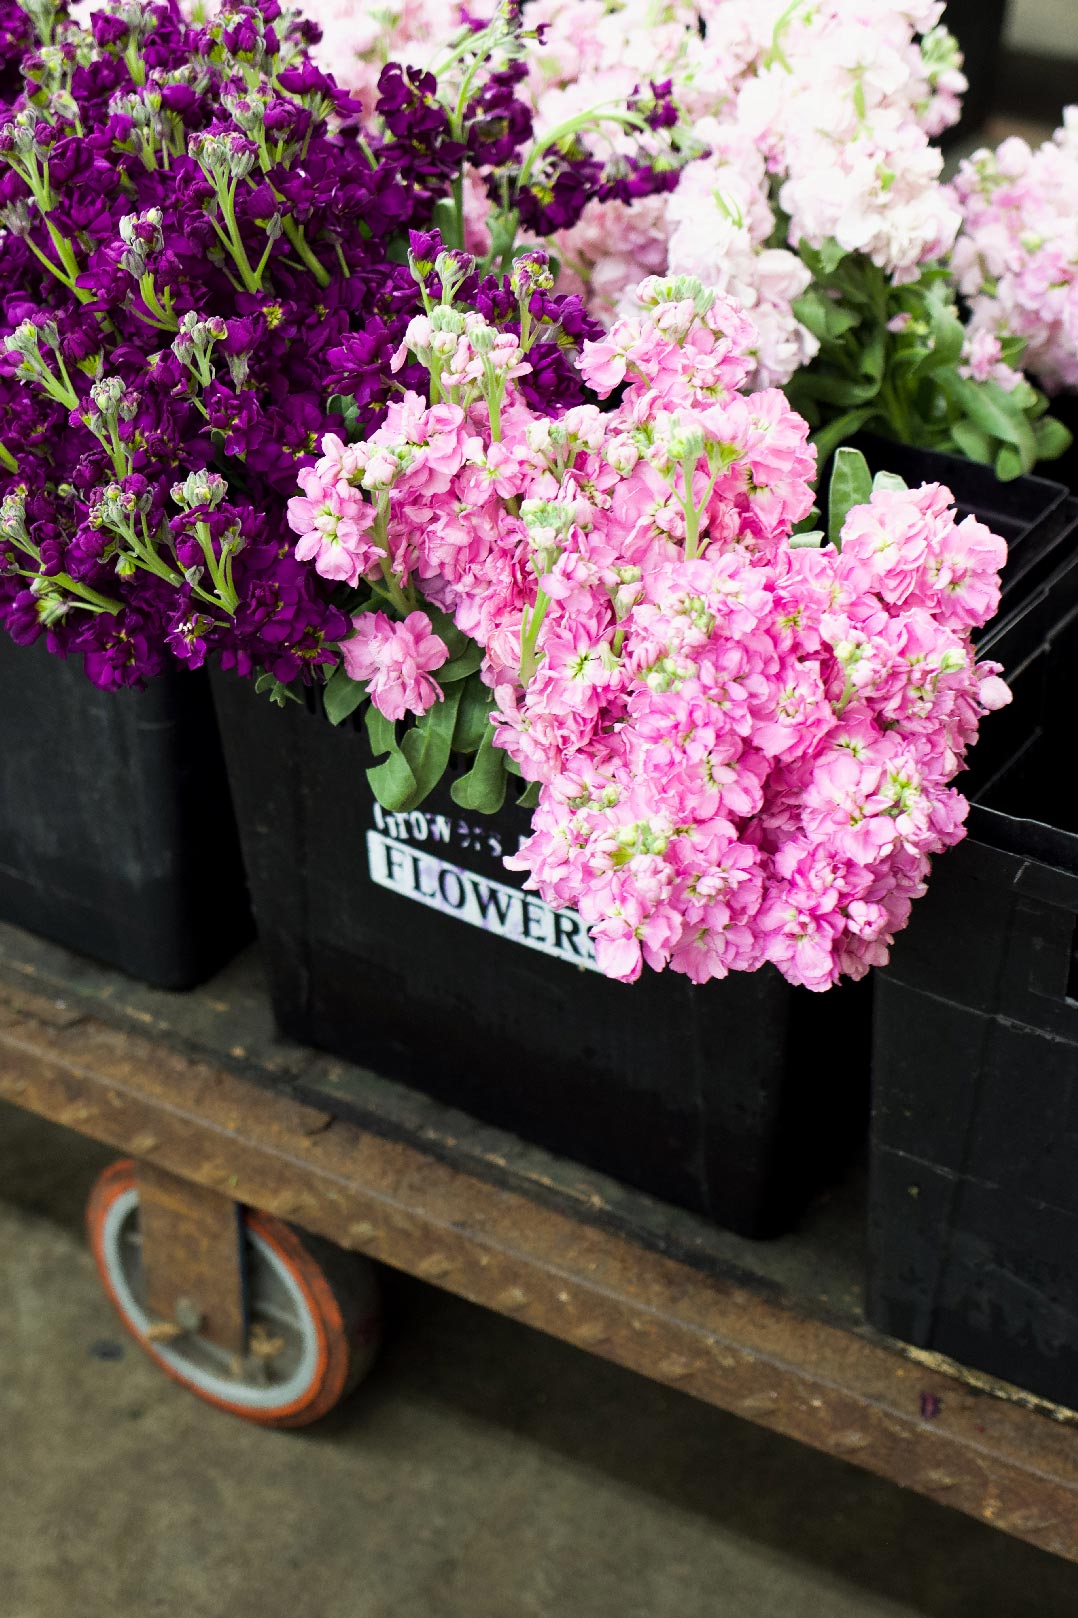 Flores rosas, púrpuras y blancas brillantes expuestas en el mercado